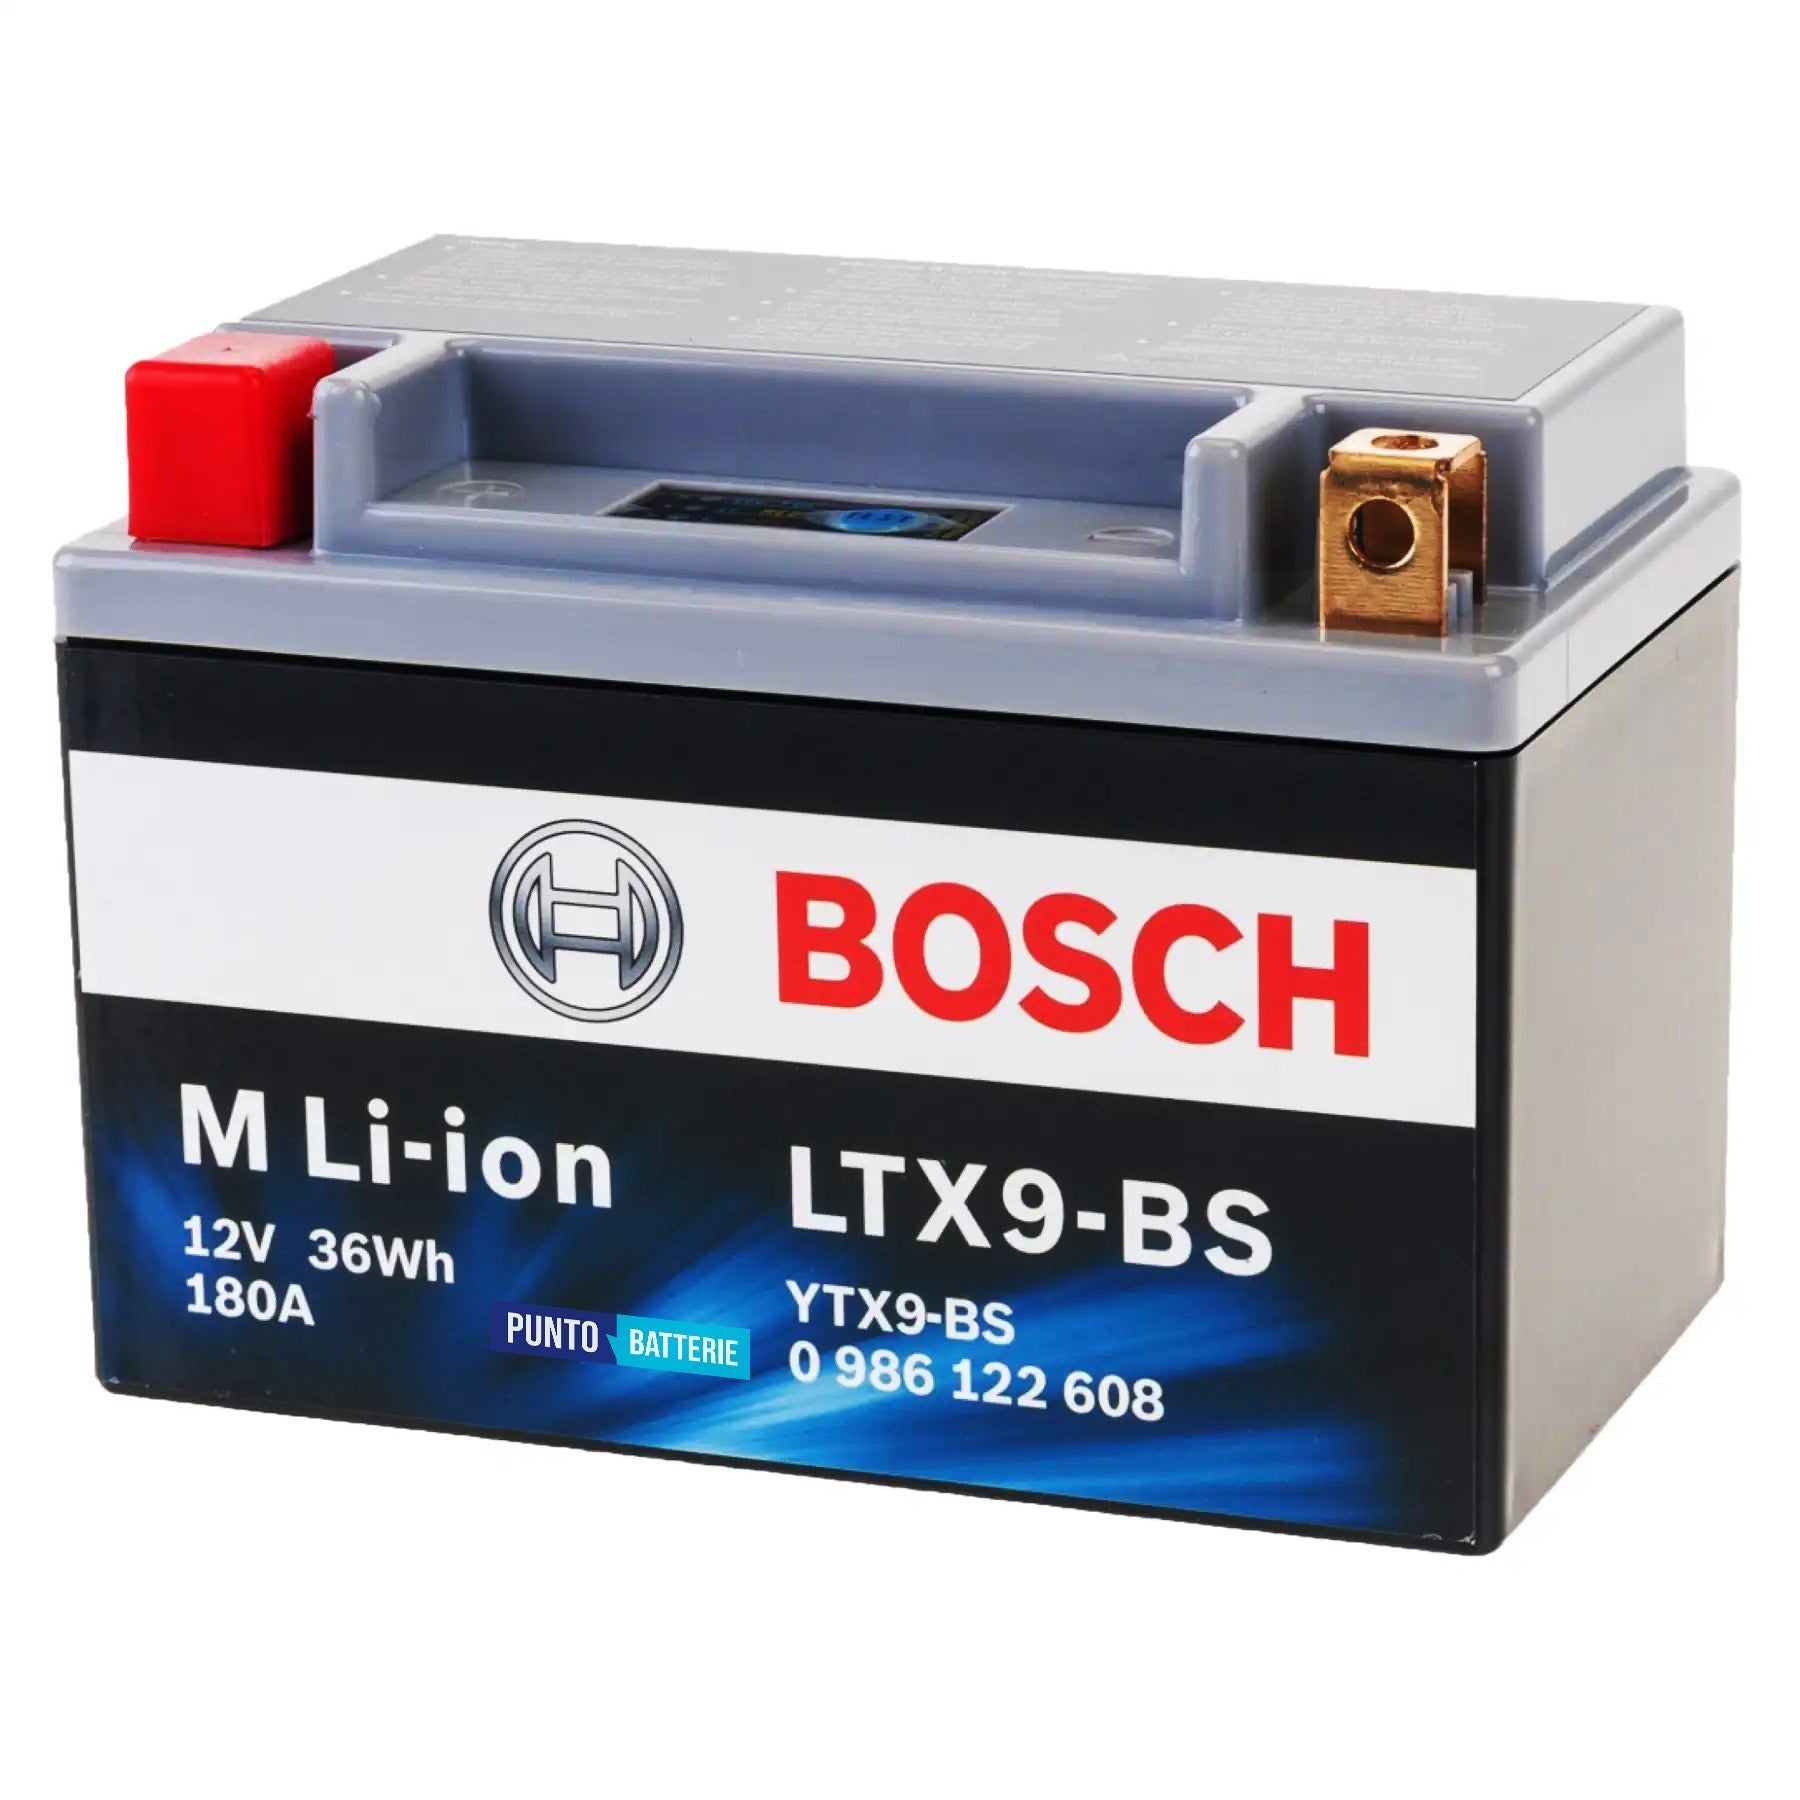 Batteria originale Bosch M Li-ion LTX9-BS, dimensioni 150 x 87 x 164, polo positivo a sinistra, 12 volt, 3 amperora, 180 ampere. Batteria per moto, scooter e powersport.